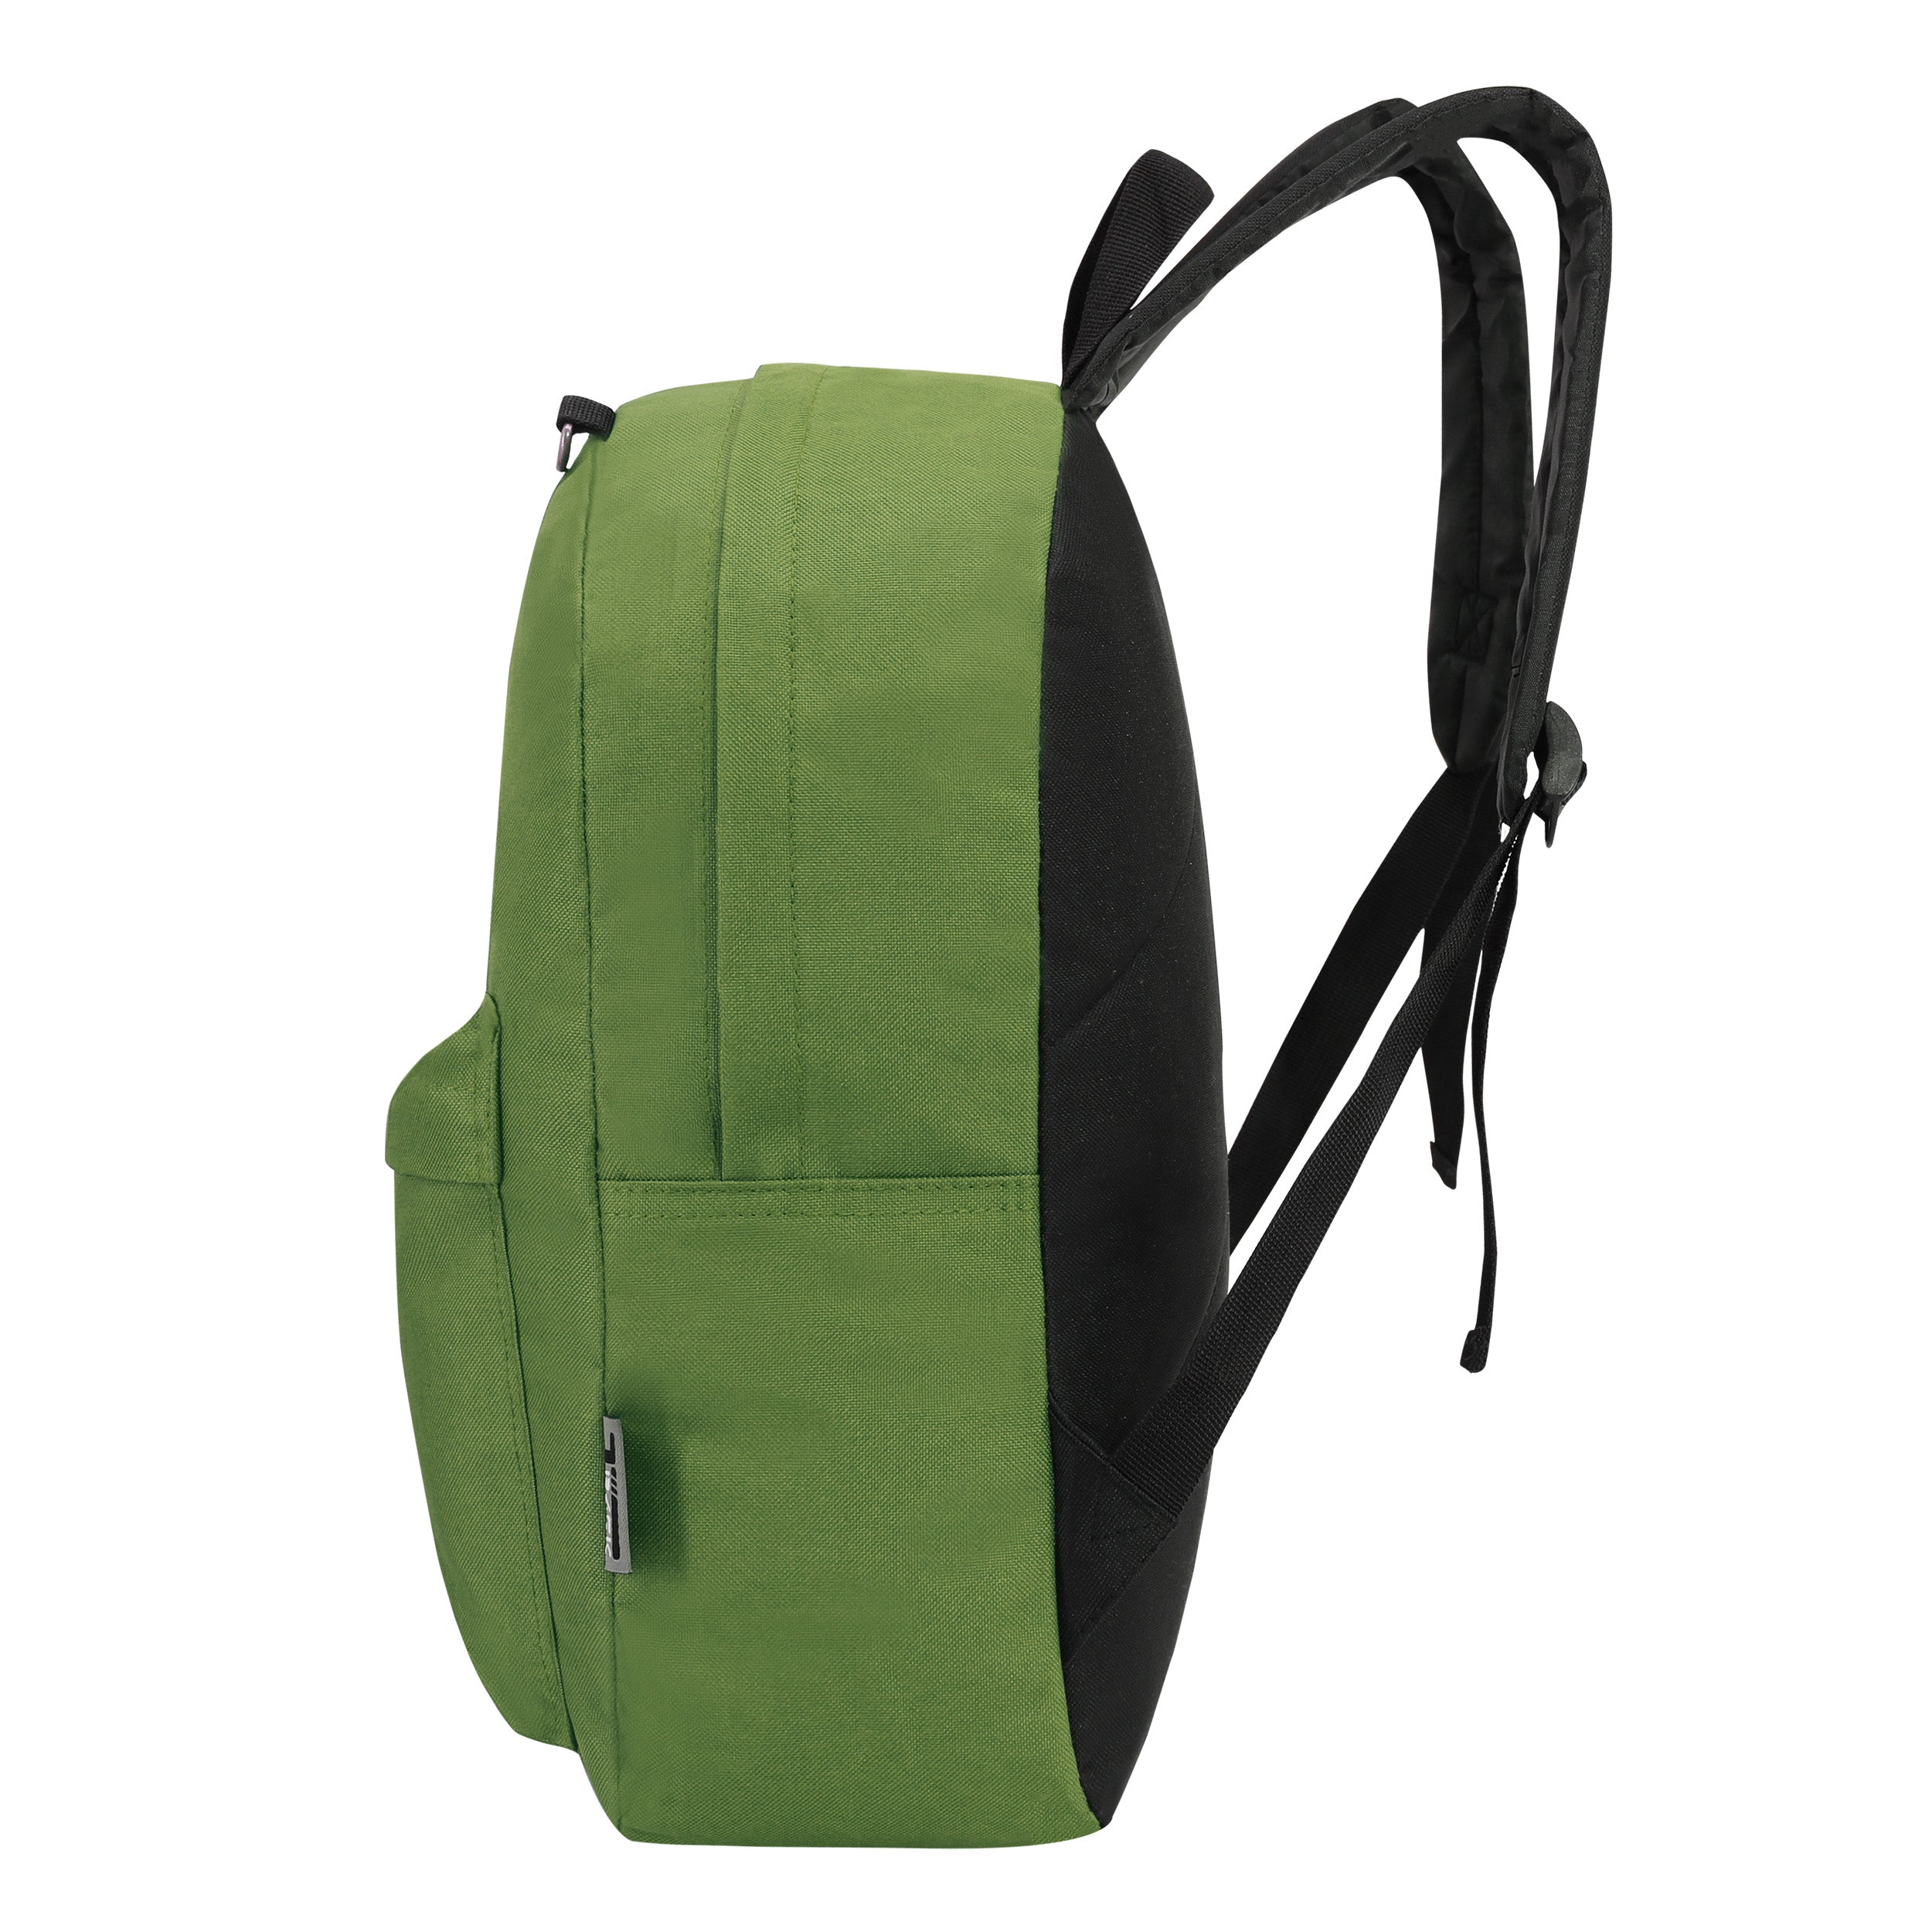 17" Kids Wholesale Backpacks in Olive Green | Bulk Case of 24 Bookbags